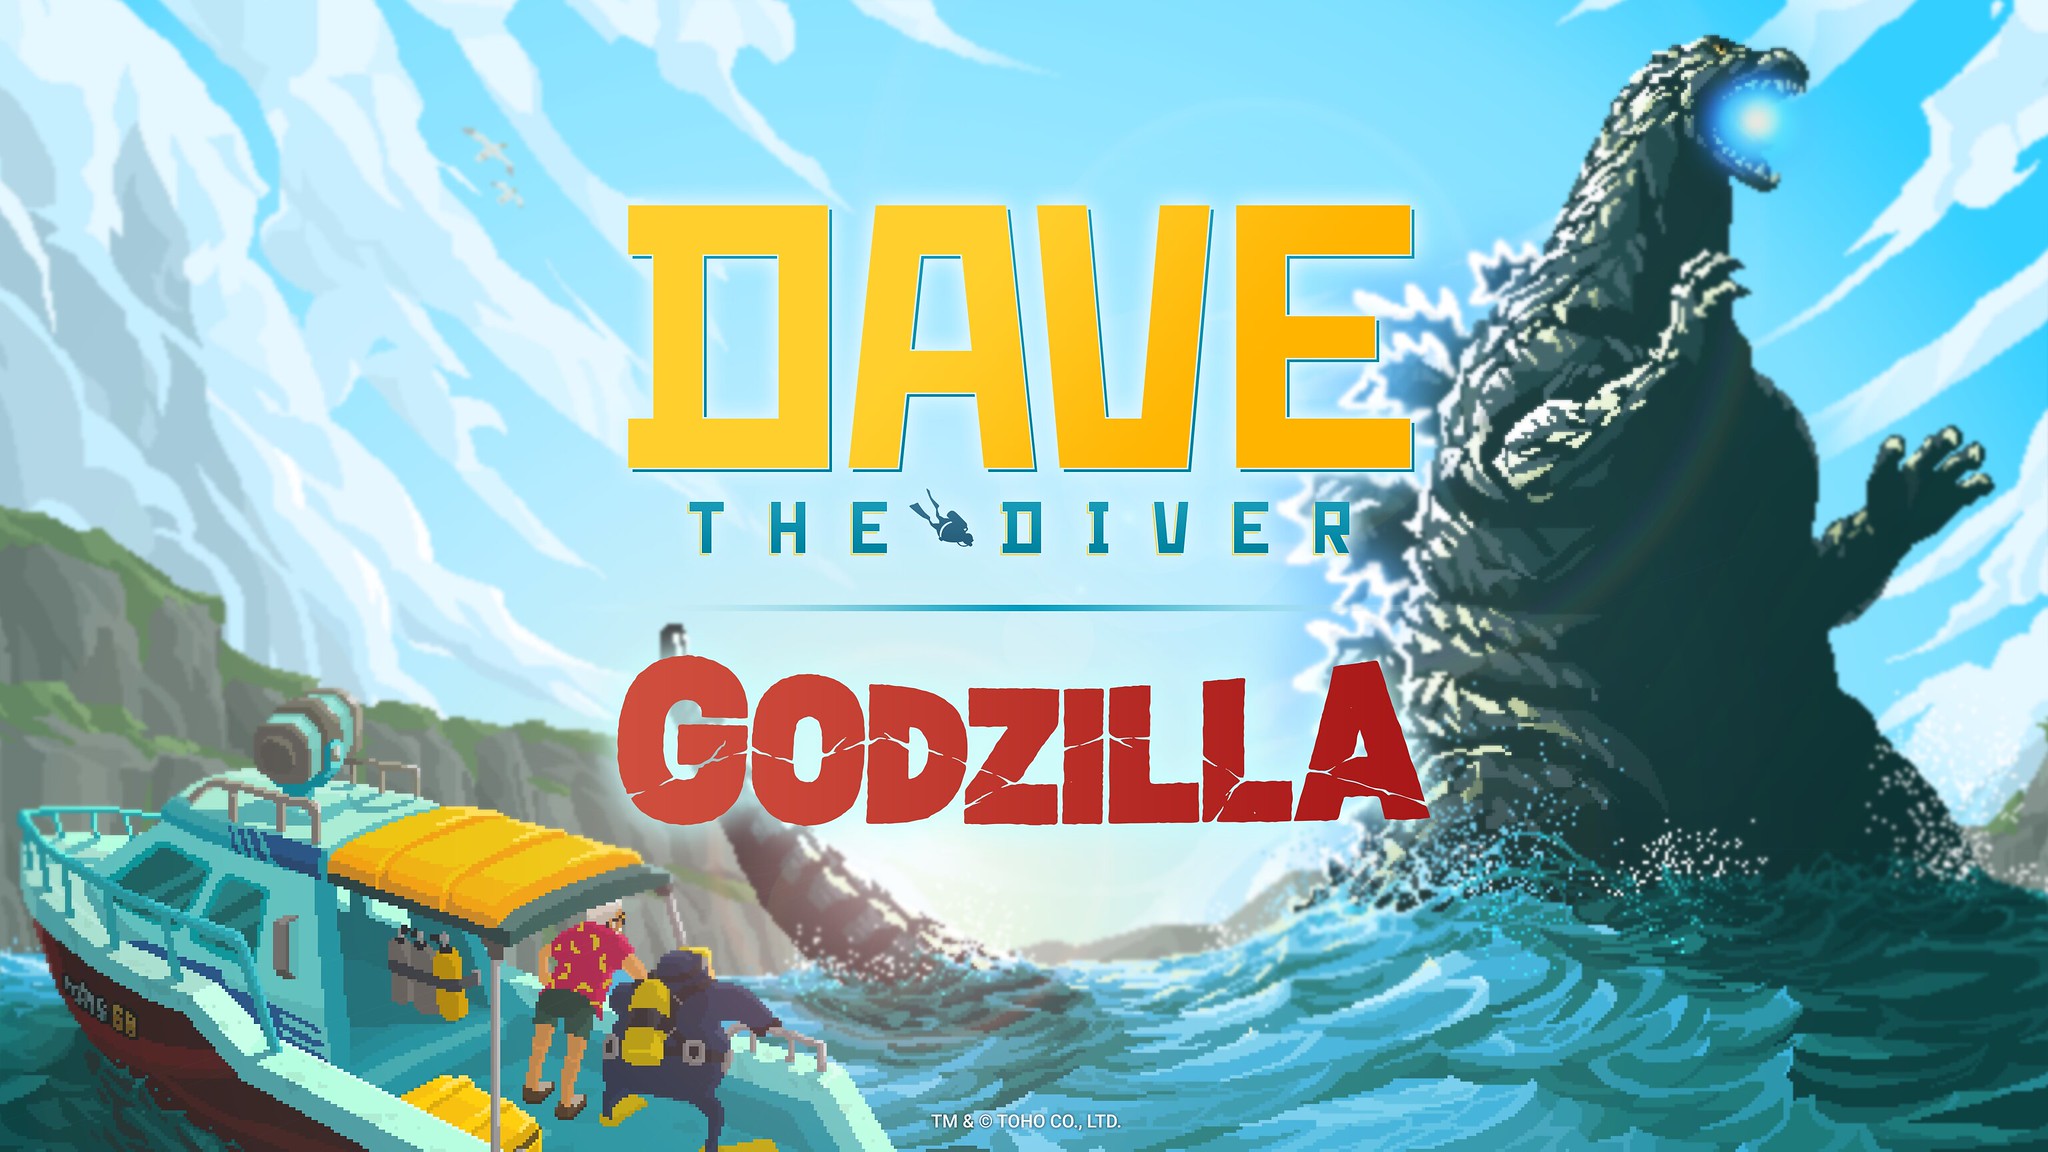 Godzilla, Dave the Diver